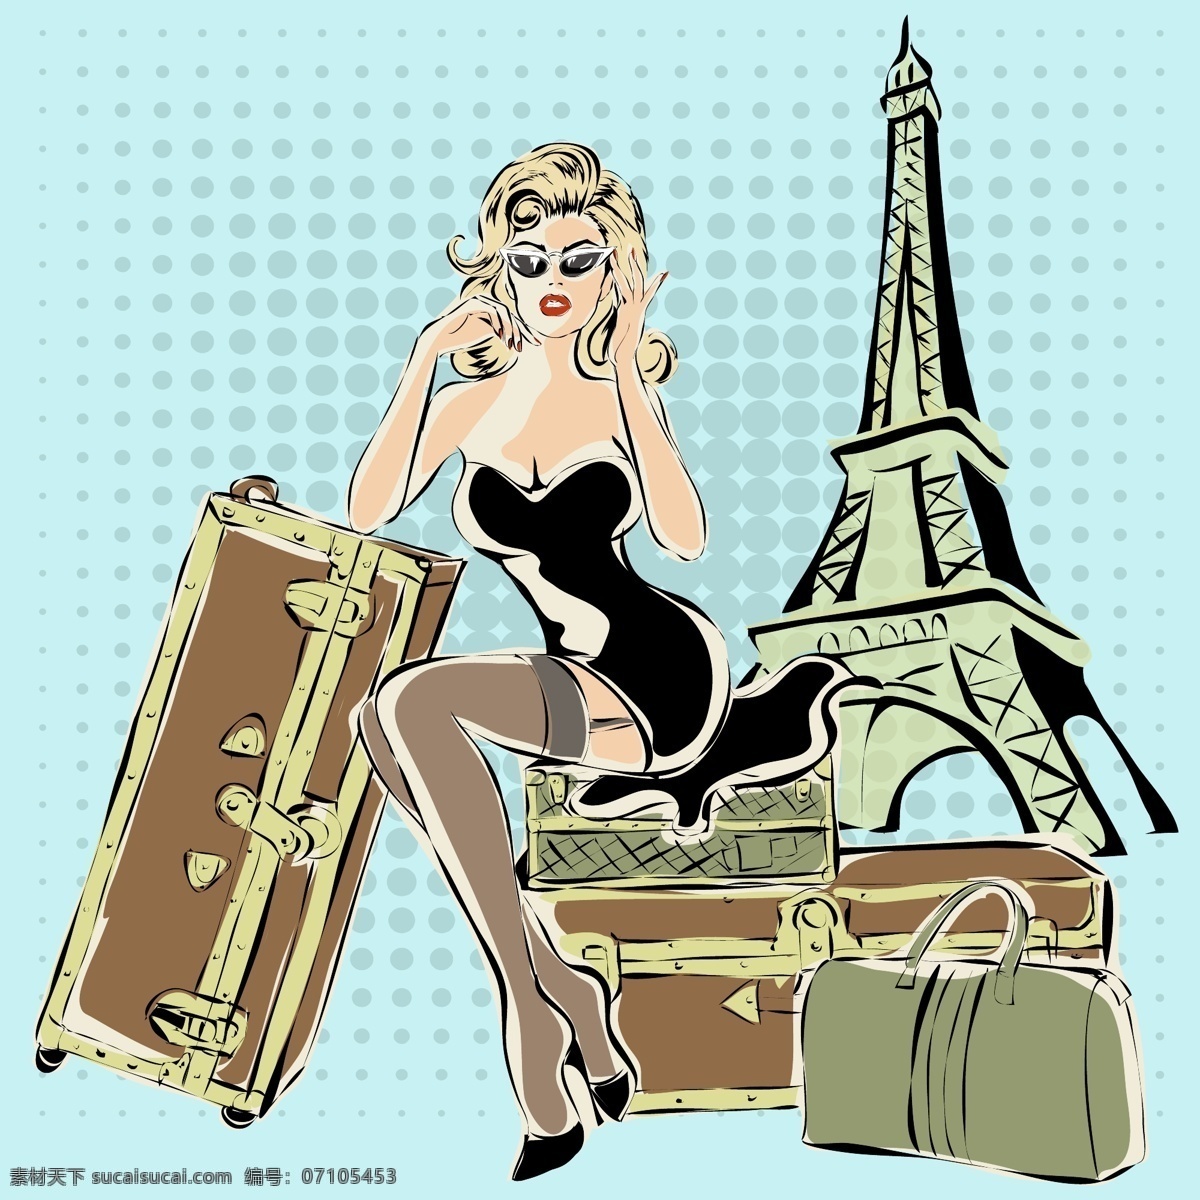 卡通 时尚 手绘 旅行 中 女人 插画 建筑 铁塔 旅行箱